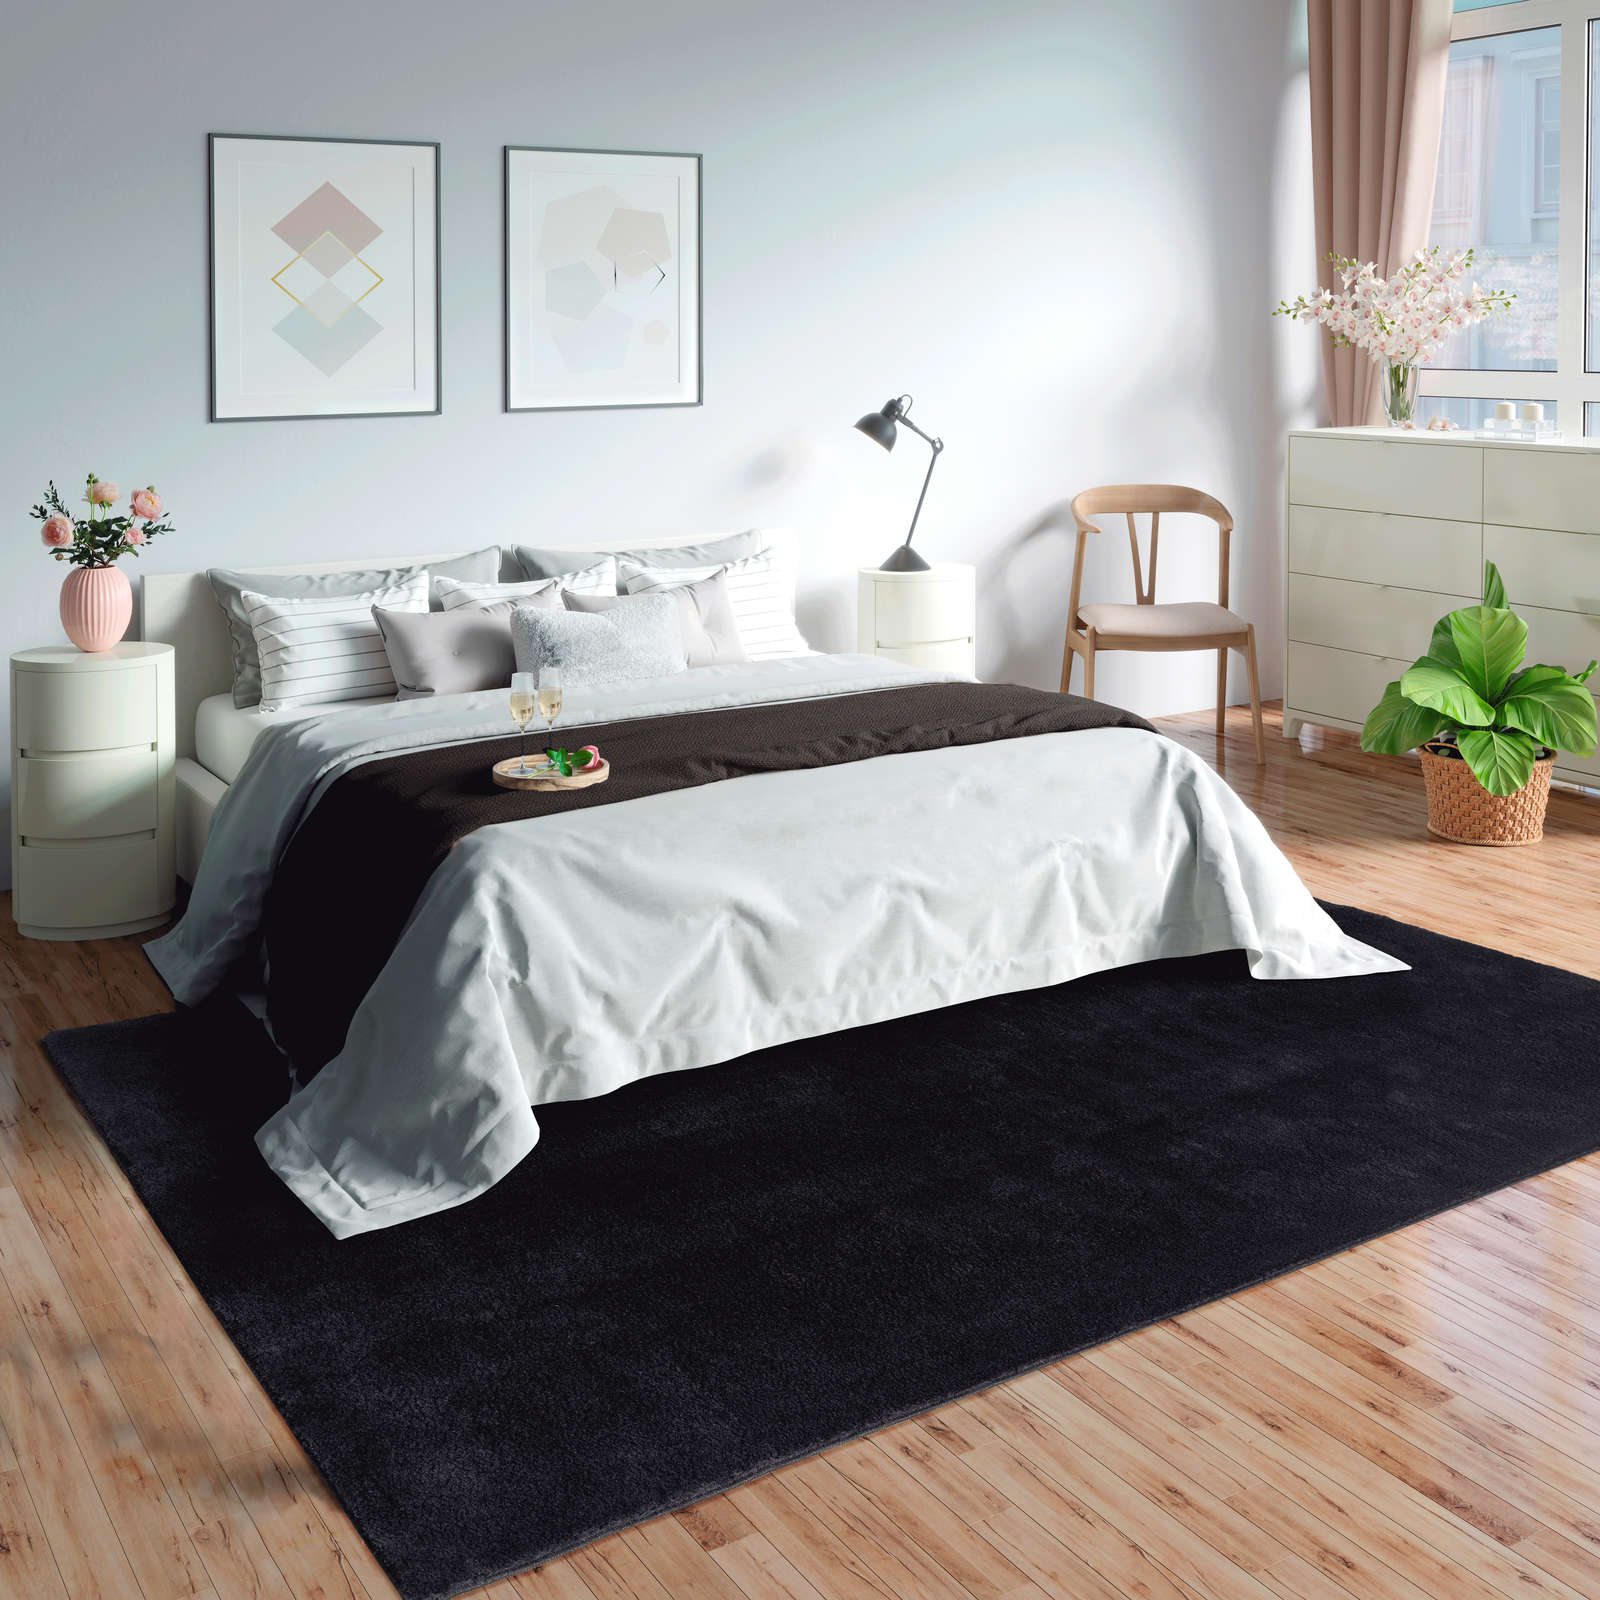             Fluweelzacht hoogpolig tapijt in zwart - 230 x 160 cm
        